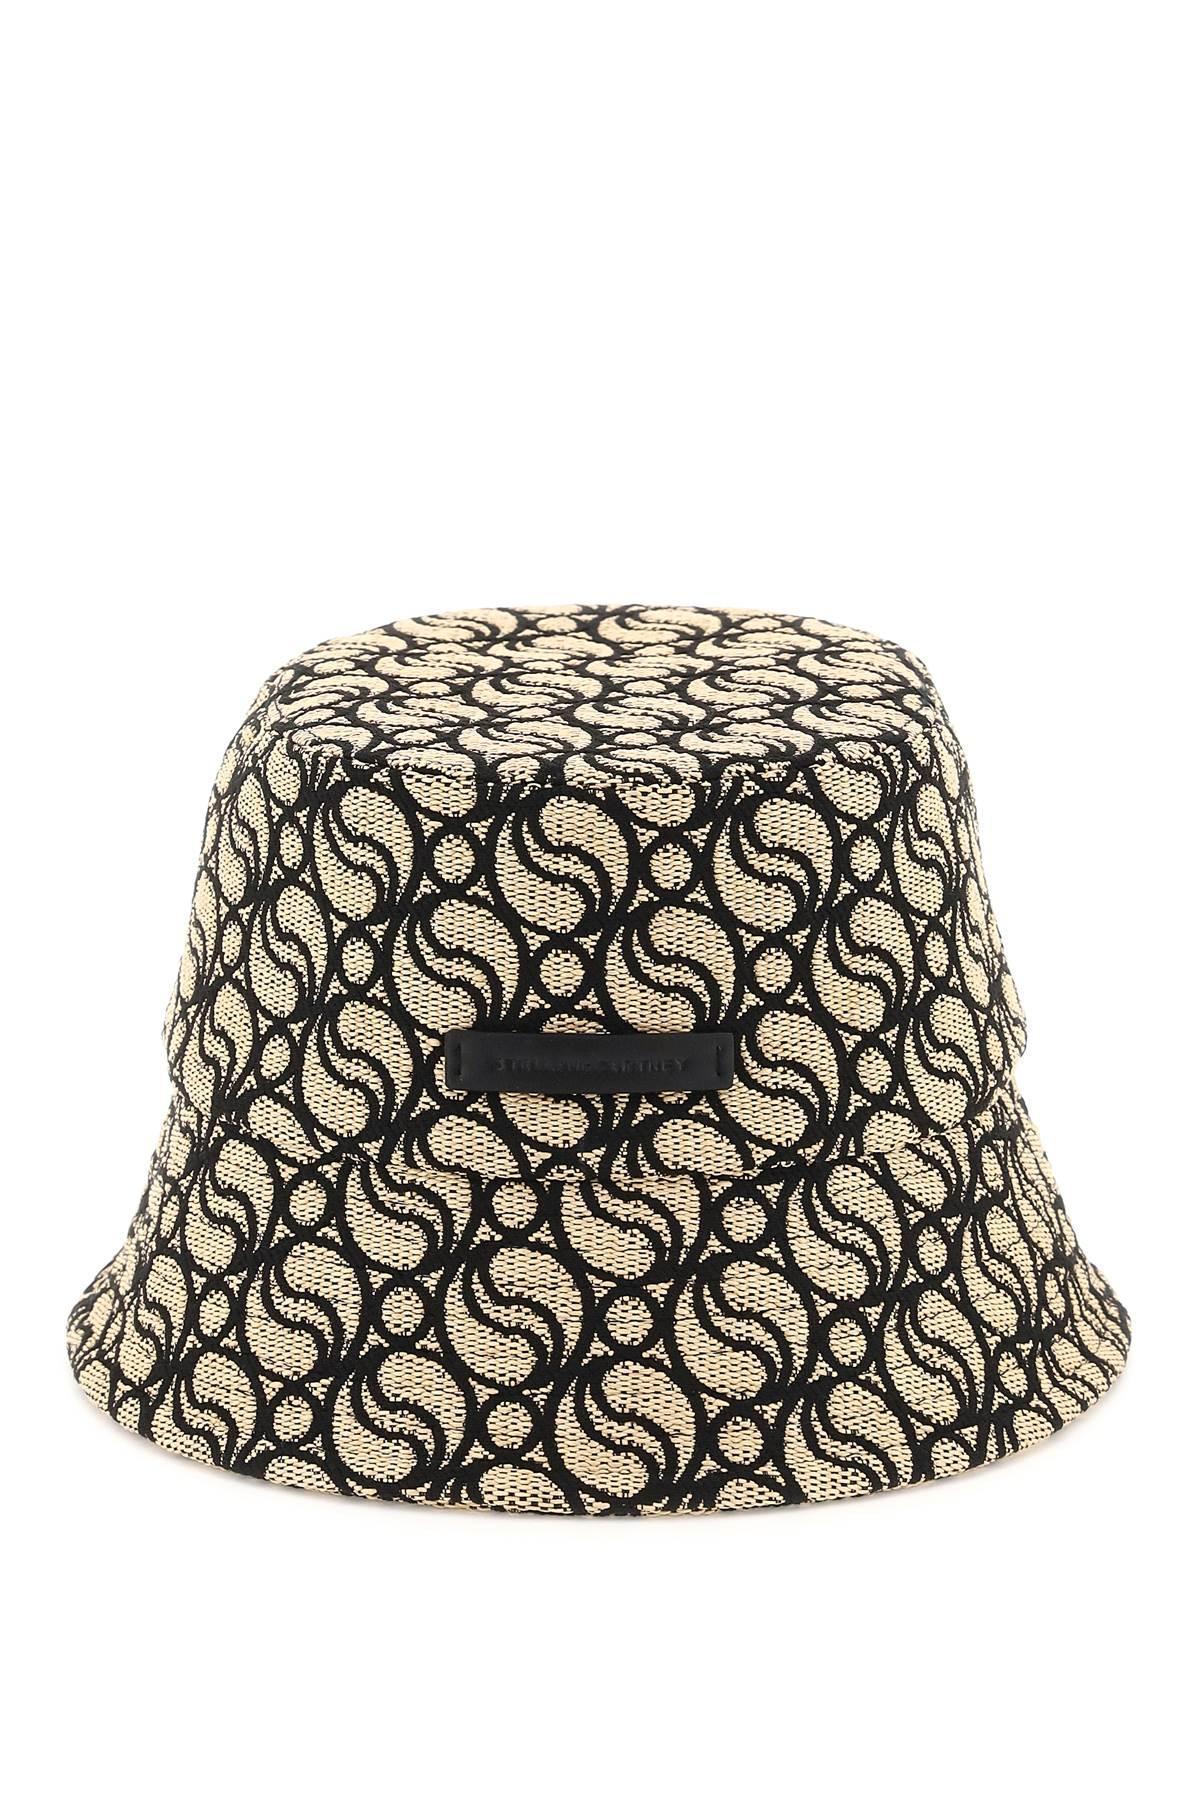 Cappello Louis Vuitton nero ~ Arte Vintage Shop